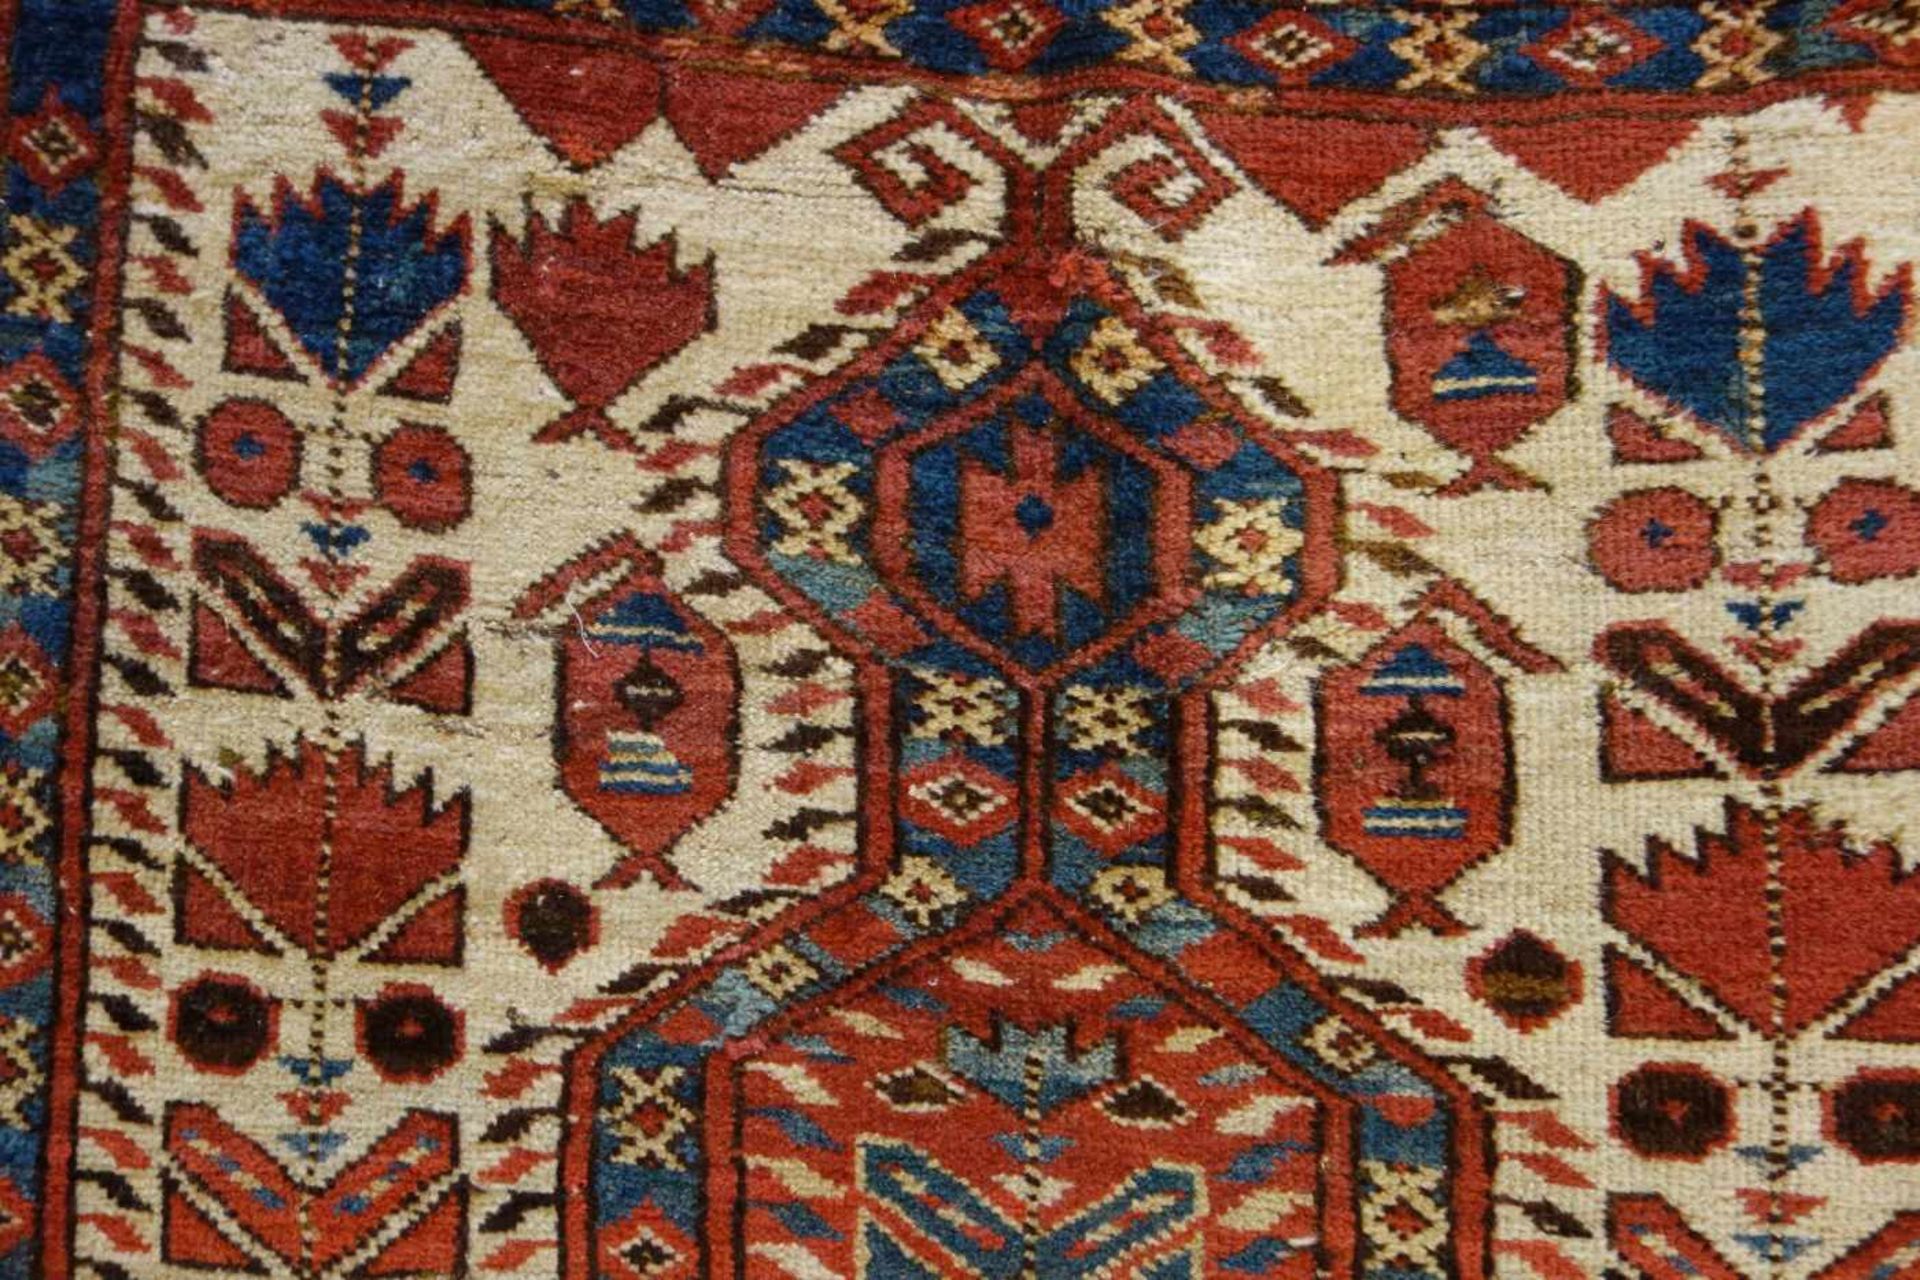 SCHMALER BESCHIR GEBETSTEPPICH / prayer rug, wohl 2. H. 19. Jh., Turkmenistan / Ersari-Beschir ( - Image 3 of 24